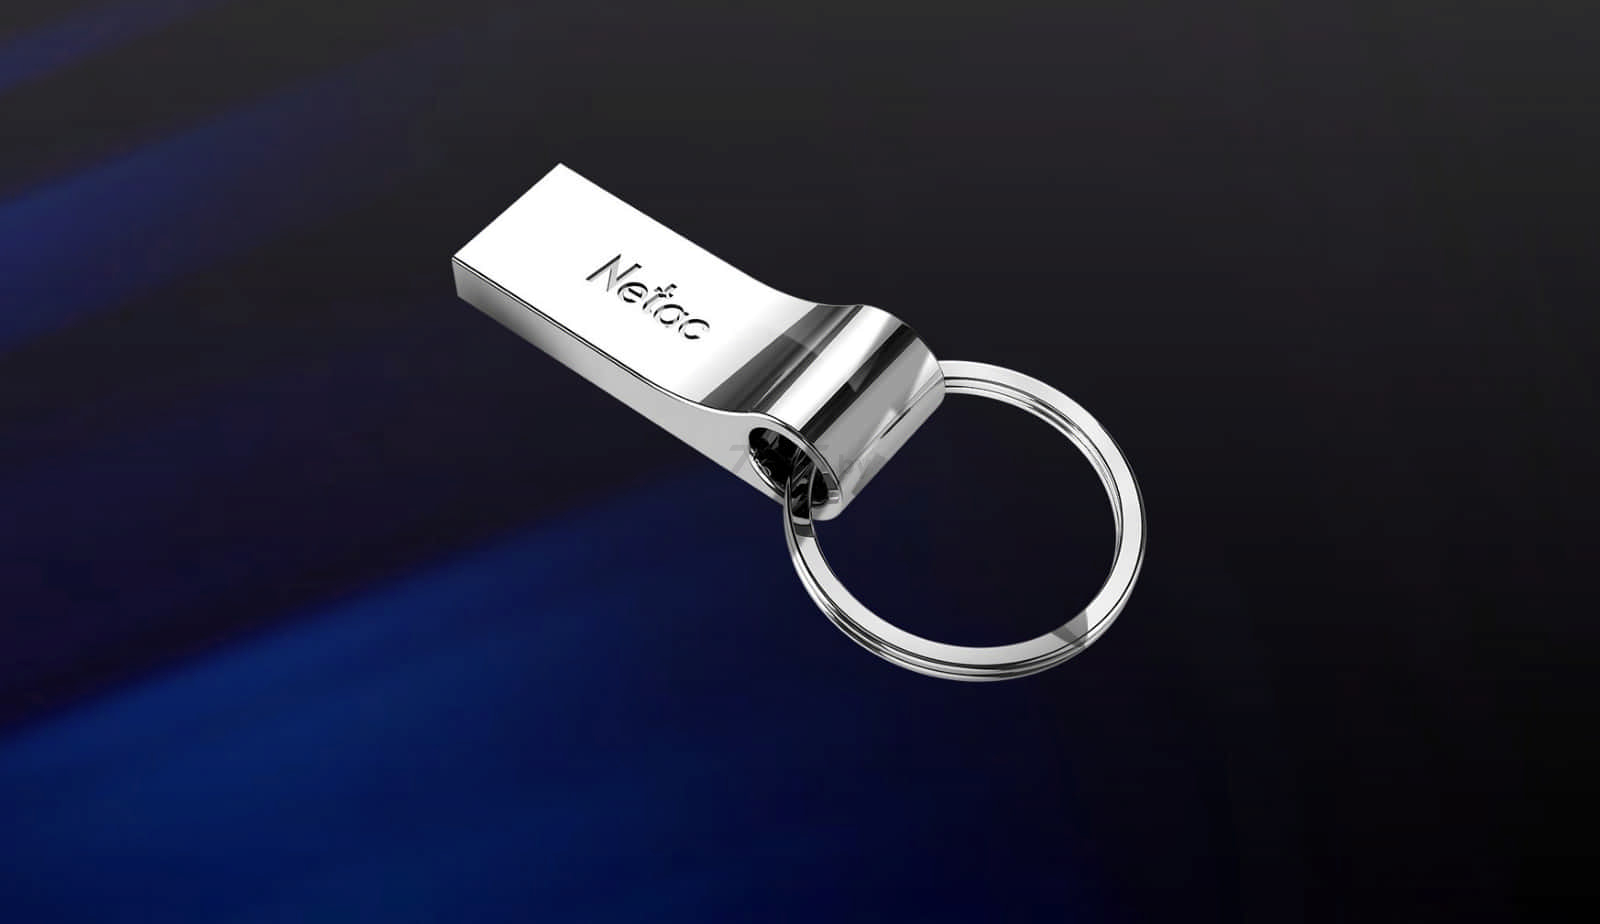 USB-флешка 64 Гб NETAC U275 USB 2.0 (NT03U275N-064G-20SL) - Фото 7